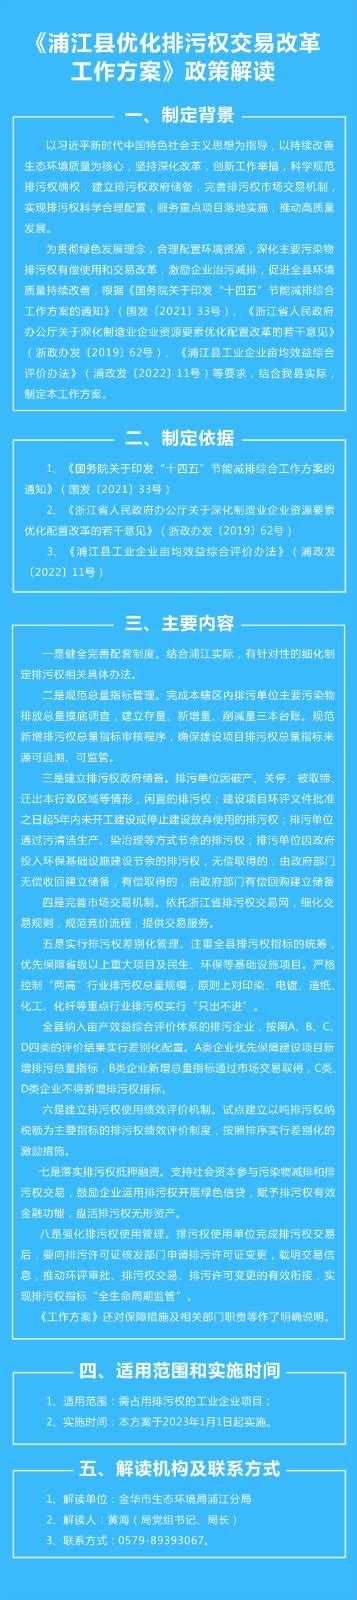 《浦江县优化排污权交易改革工作方案》政策图解